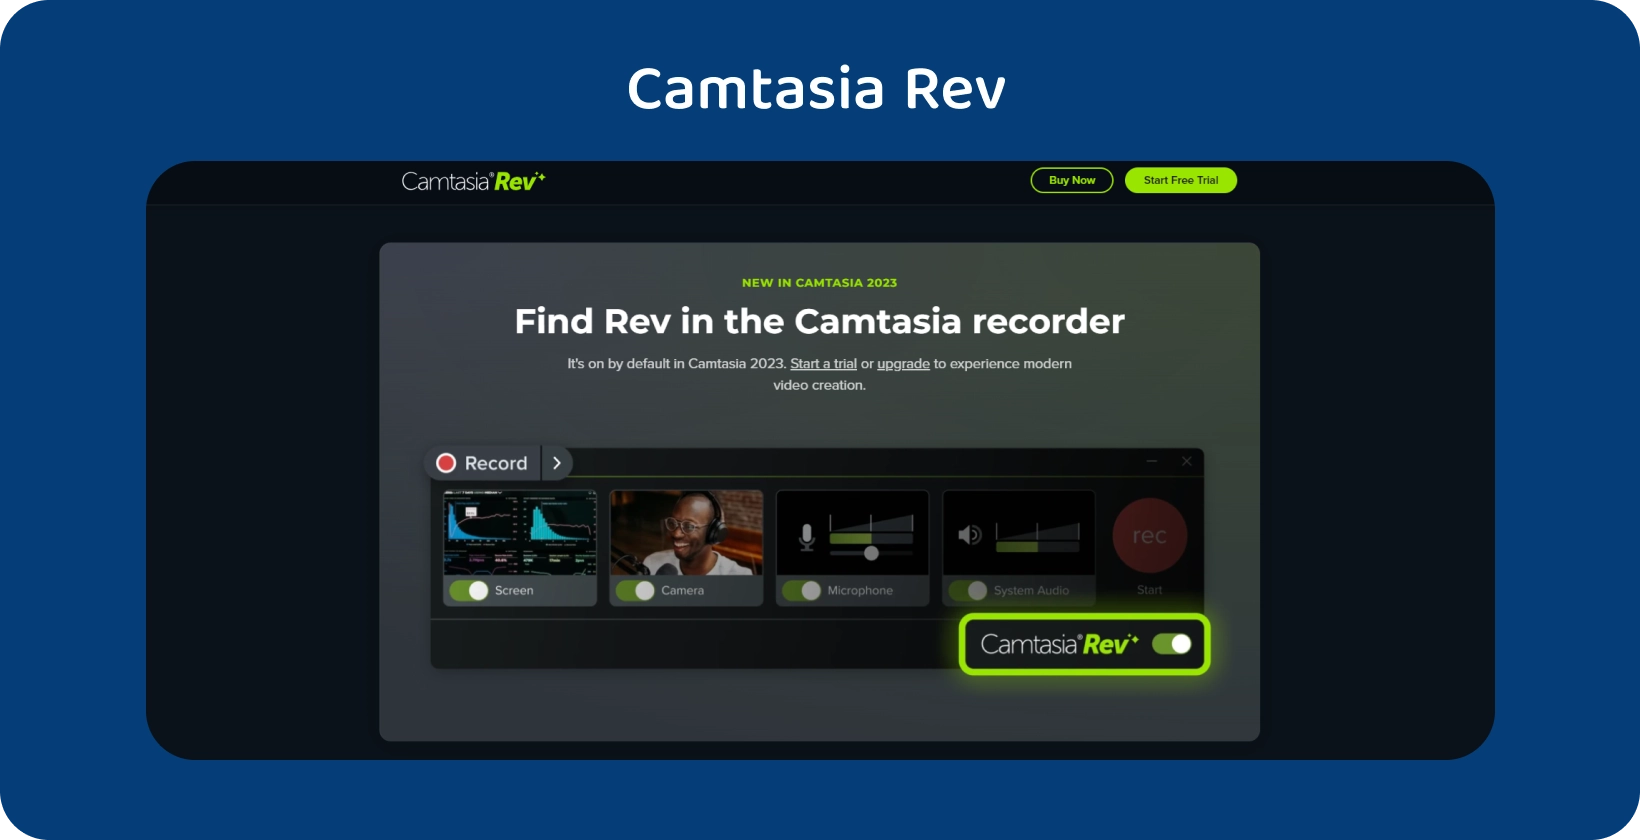 Camtasia Rev mājas lapas reklāmkarogs, kurā parādīti AI atbalstīti video veidošanas rīki uzlabotai video veidošanai.